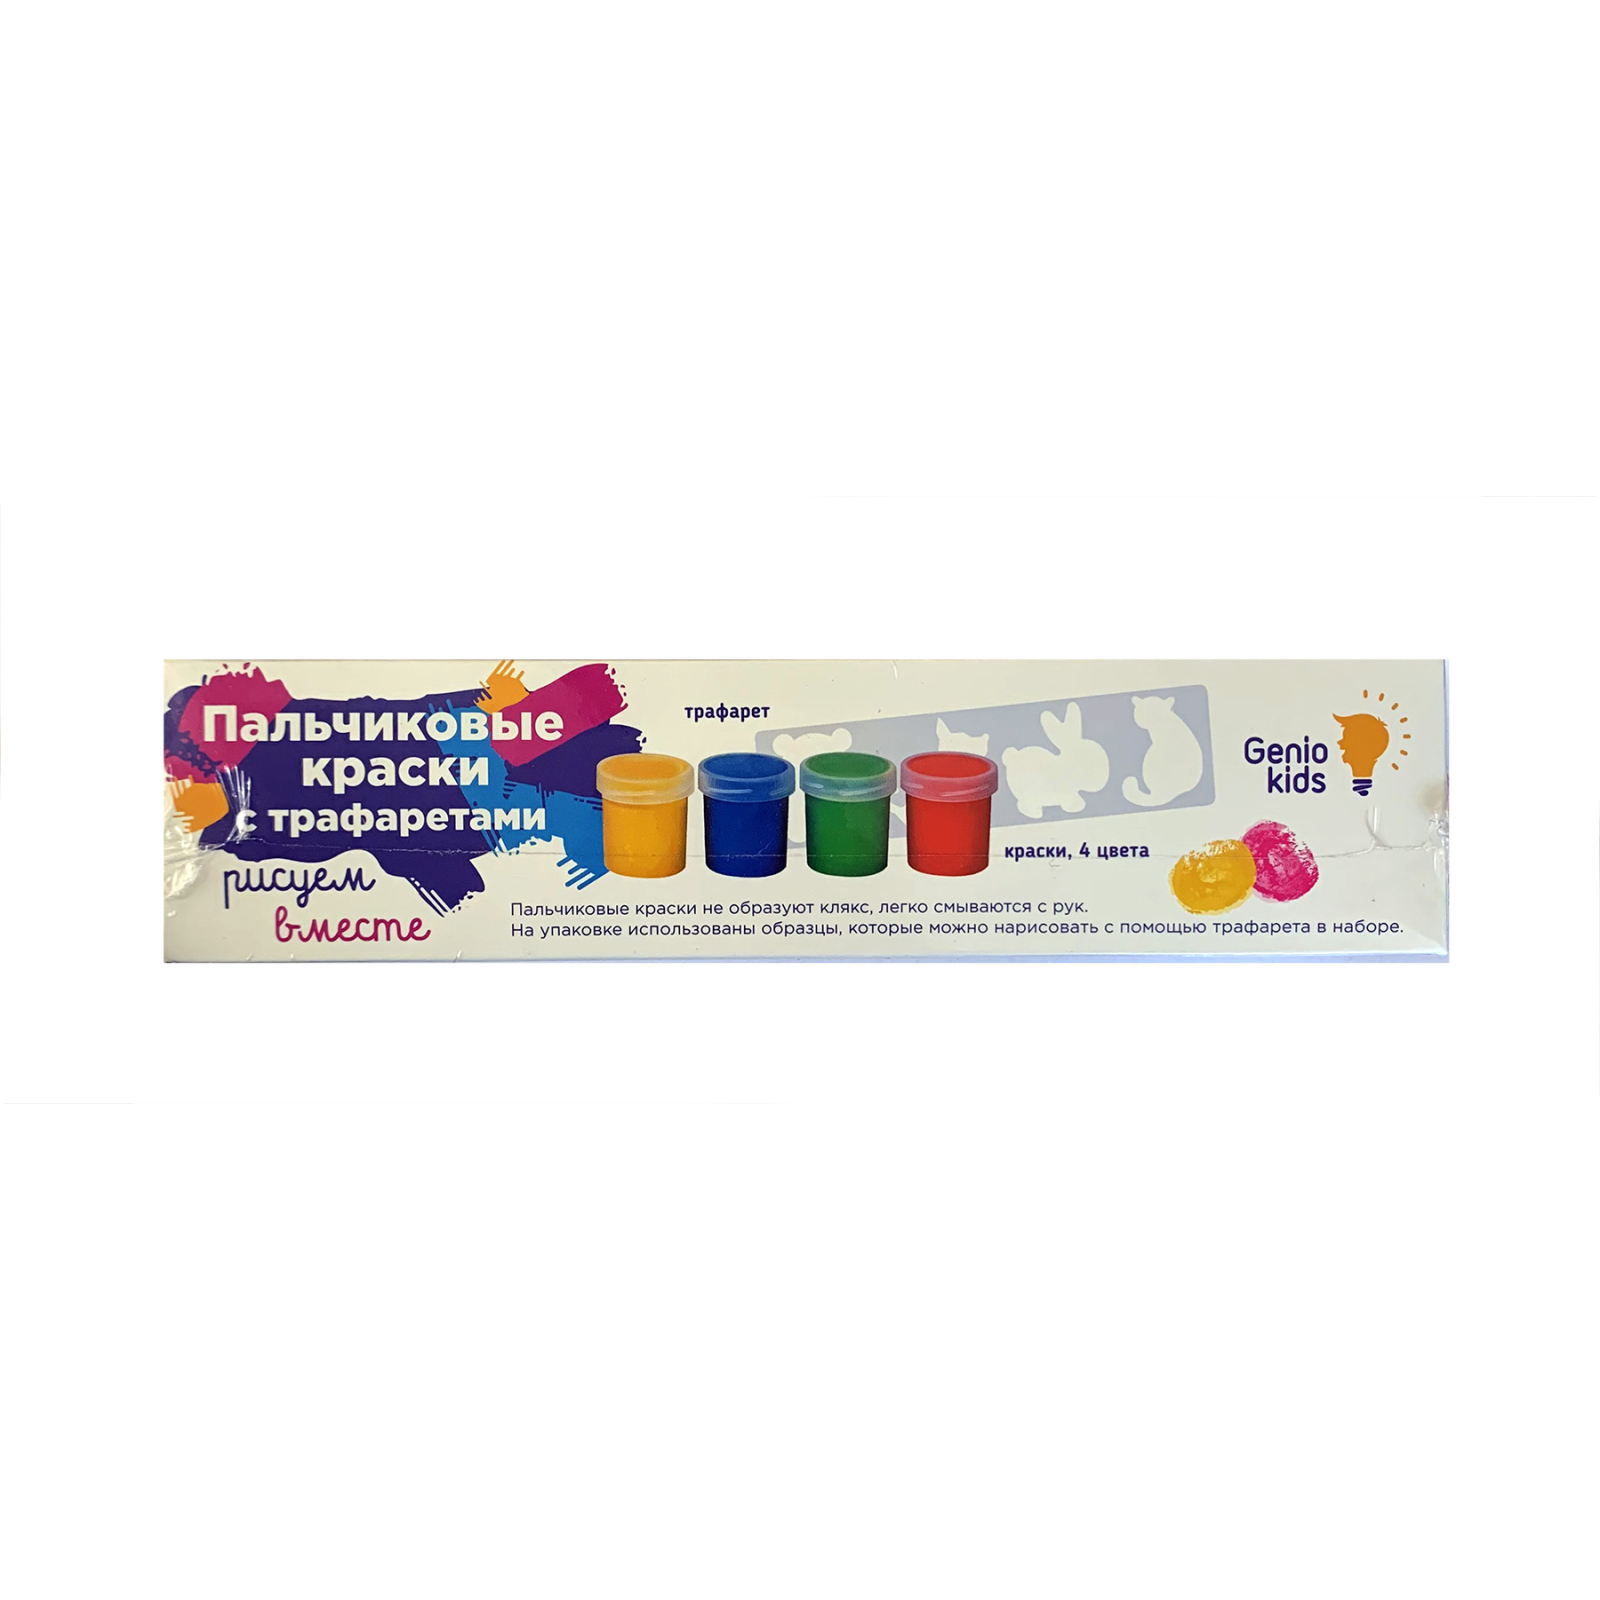 Пальчиковые краски Genio Kids Пальчиковые краски с трафаретами (TA1401)